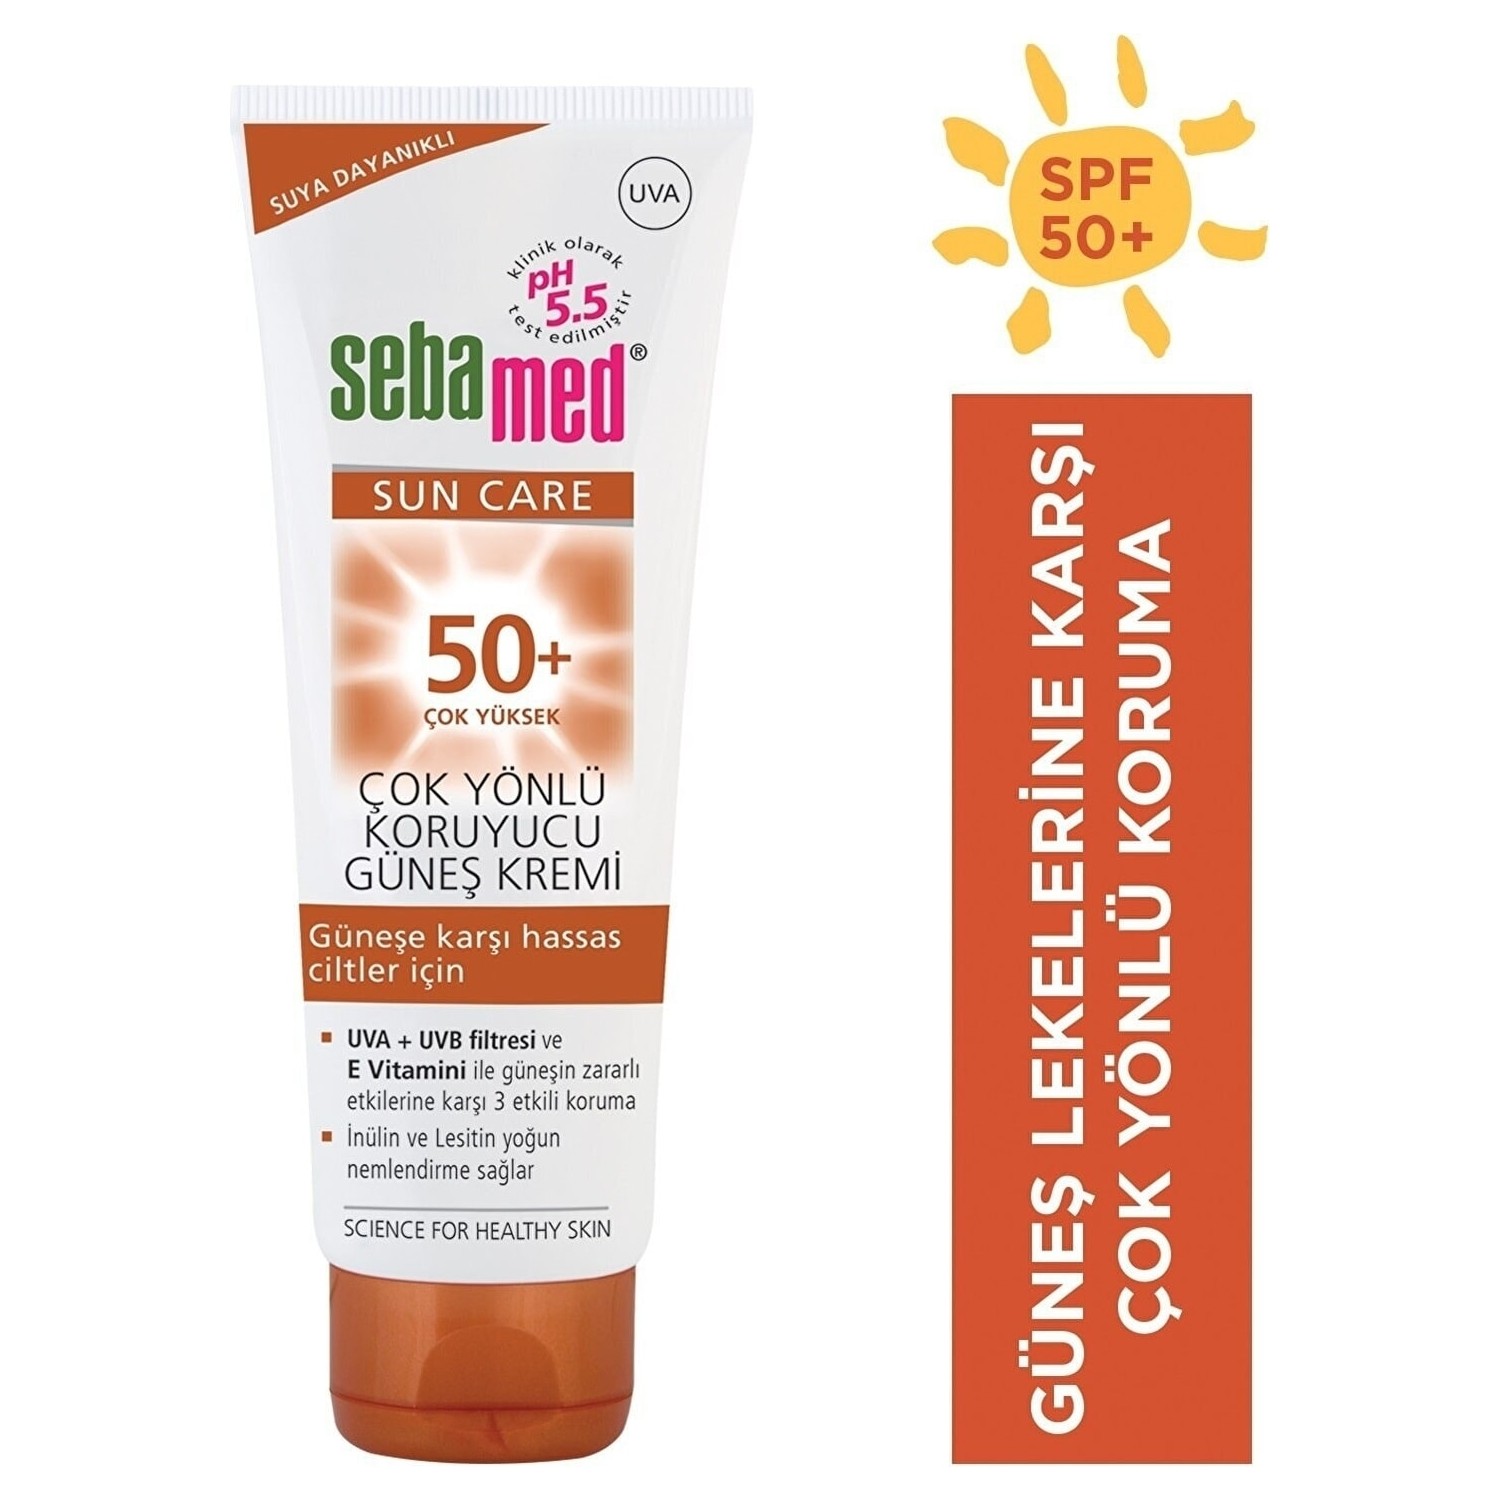 Солнцезащитный крем Sebamed Sun SPF 50, 50 мл солнцезащитный крем мусс для лица spf 50 svr sun secure 50 мл